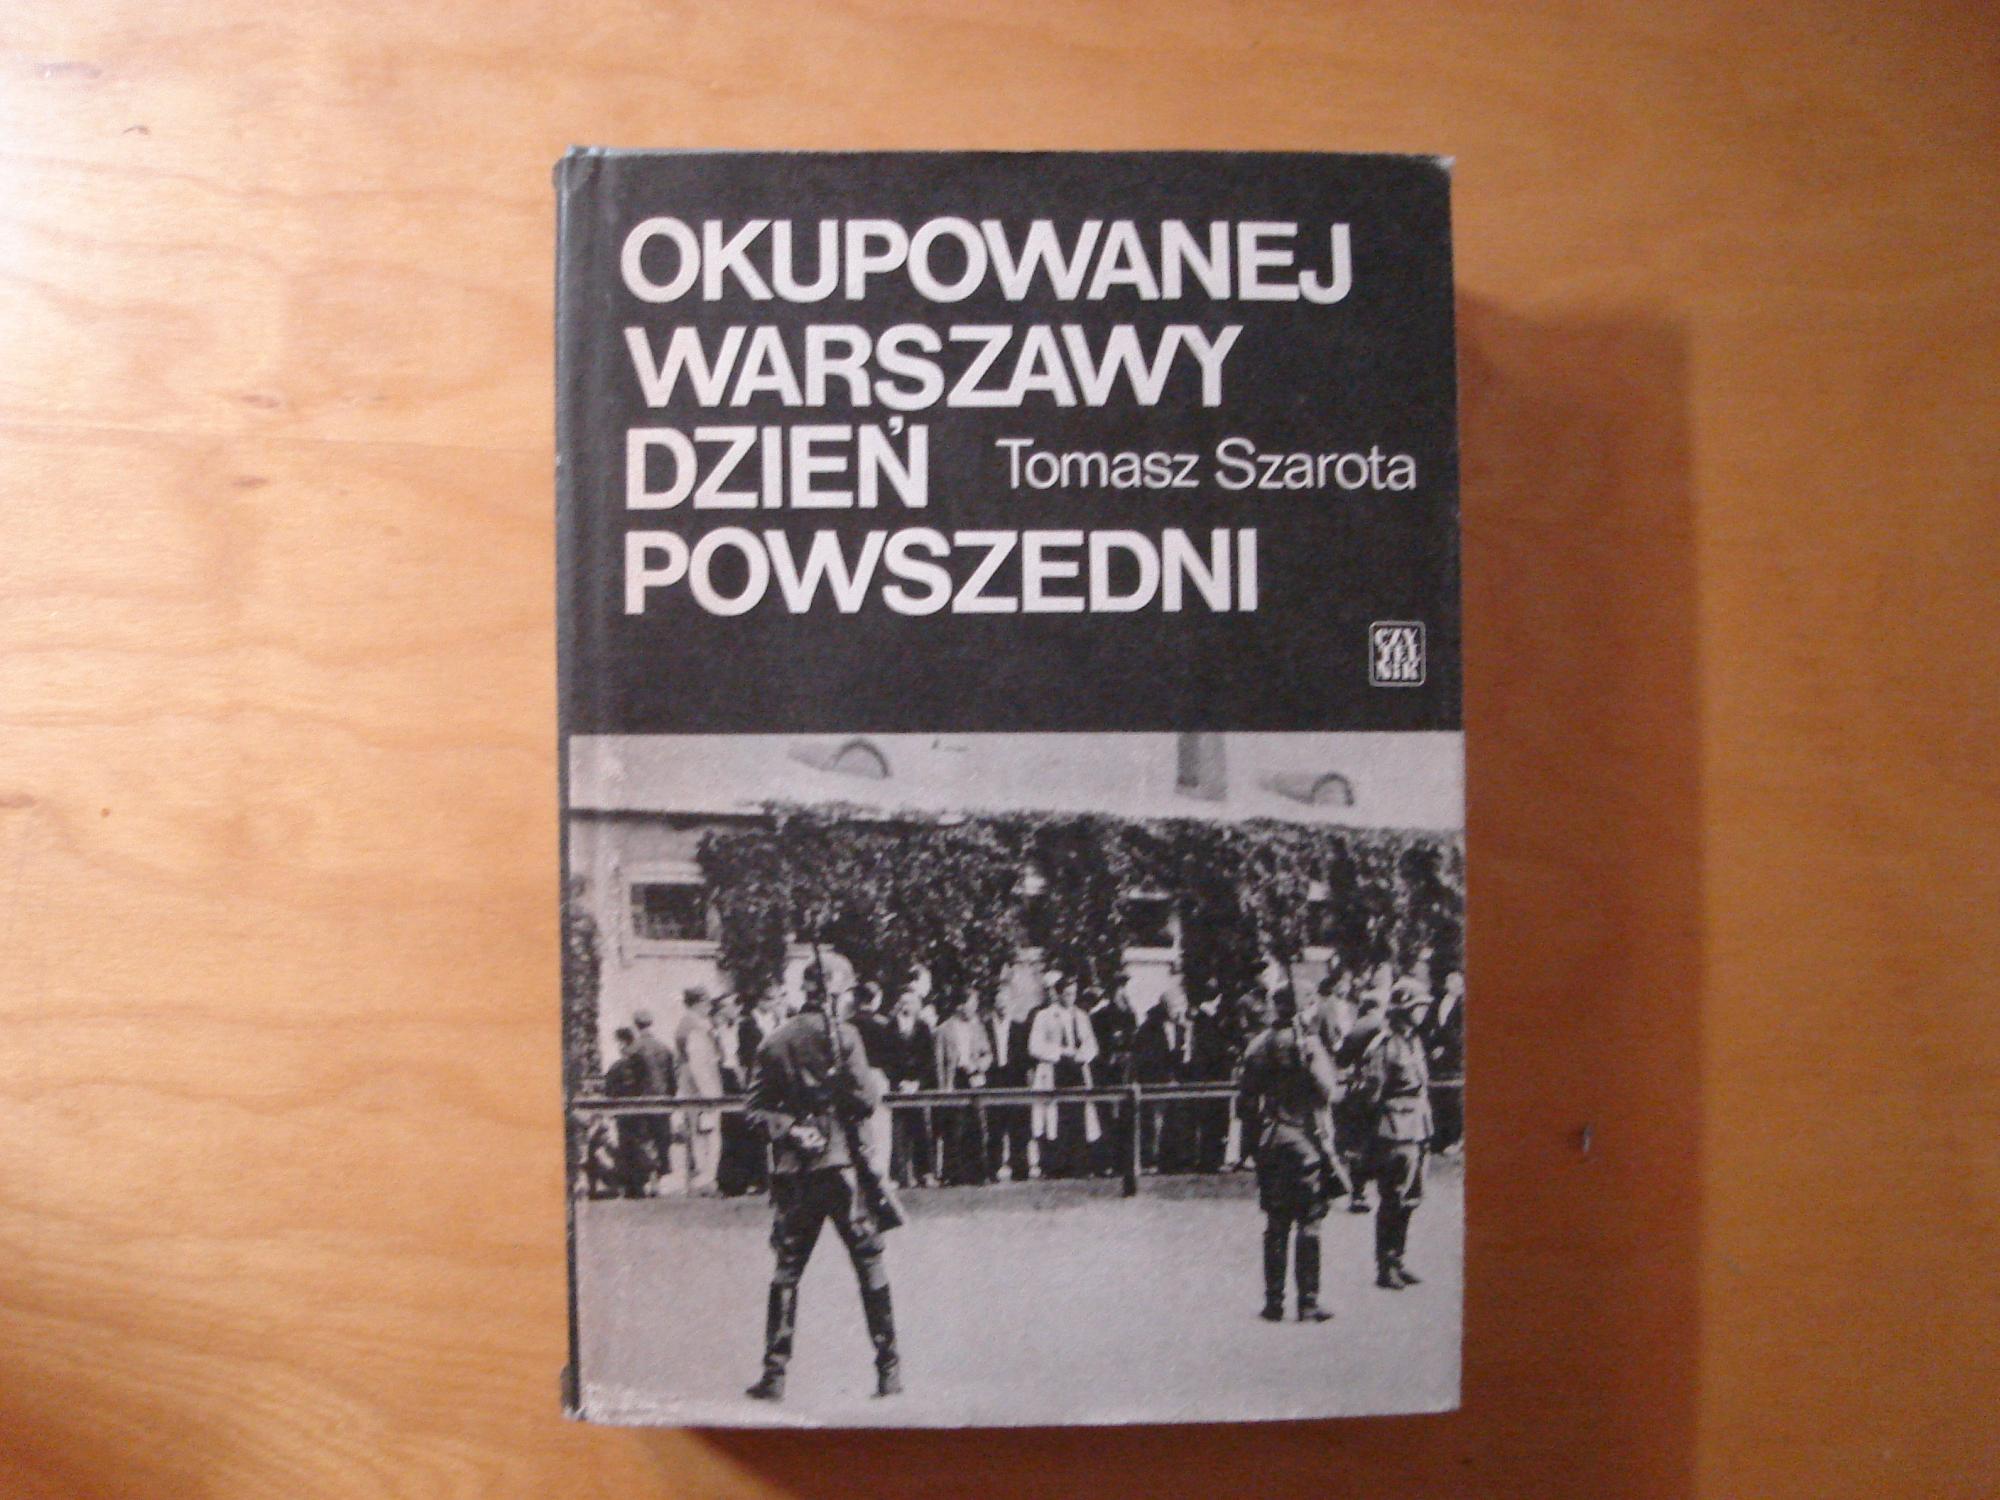 Okupowanej Warszawy dzien powszedni. Studium historyczne - Tomasz Szarota